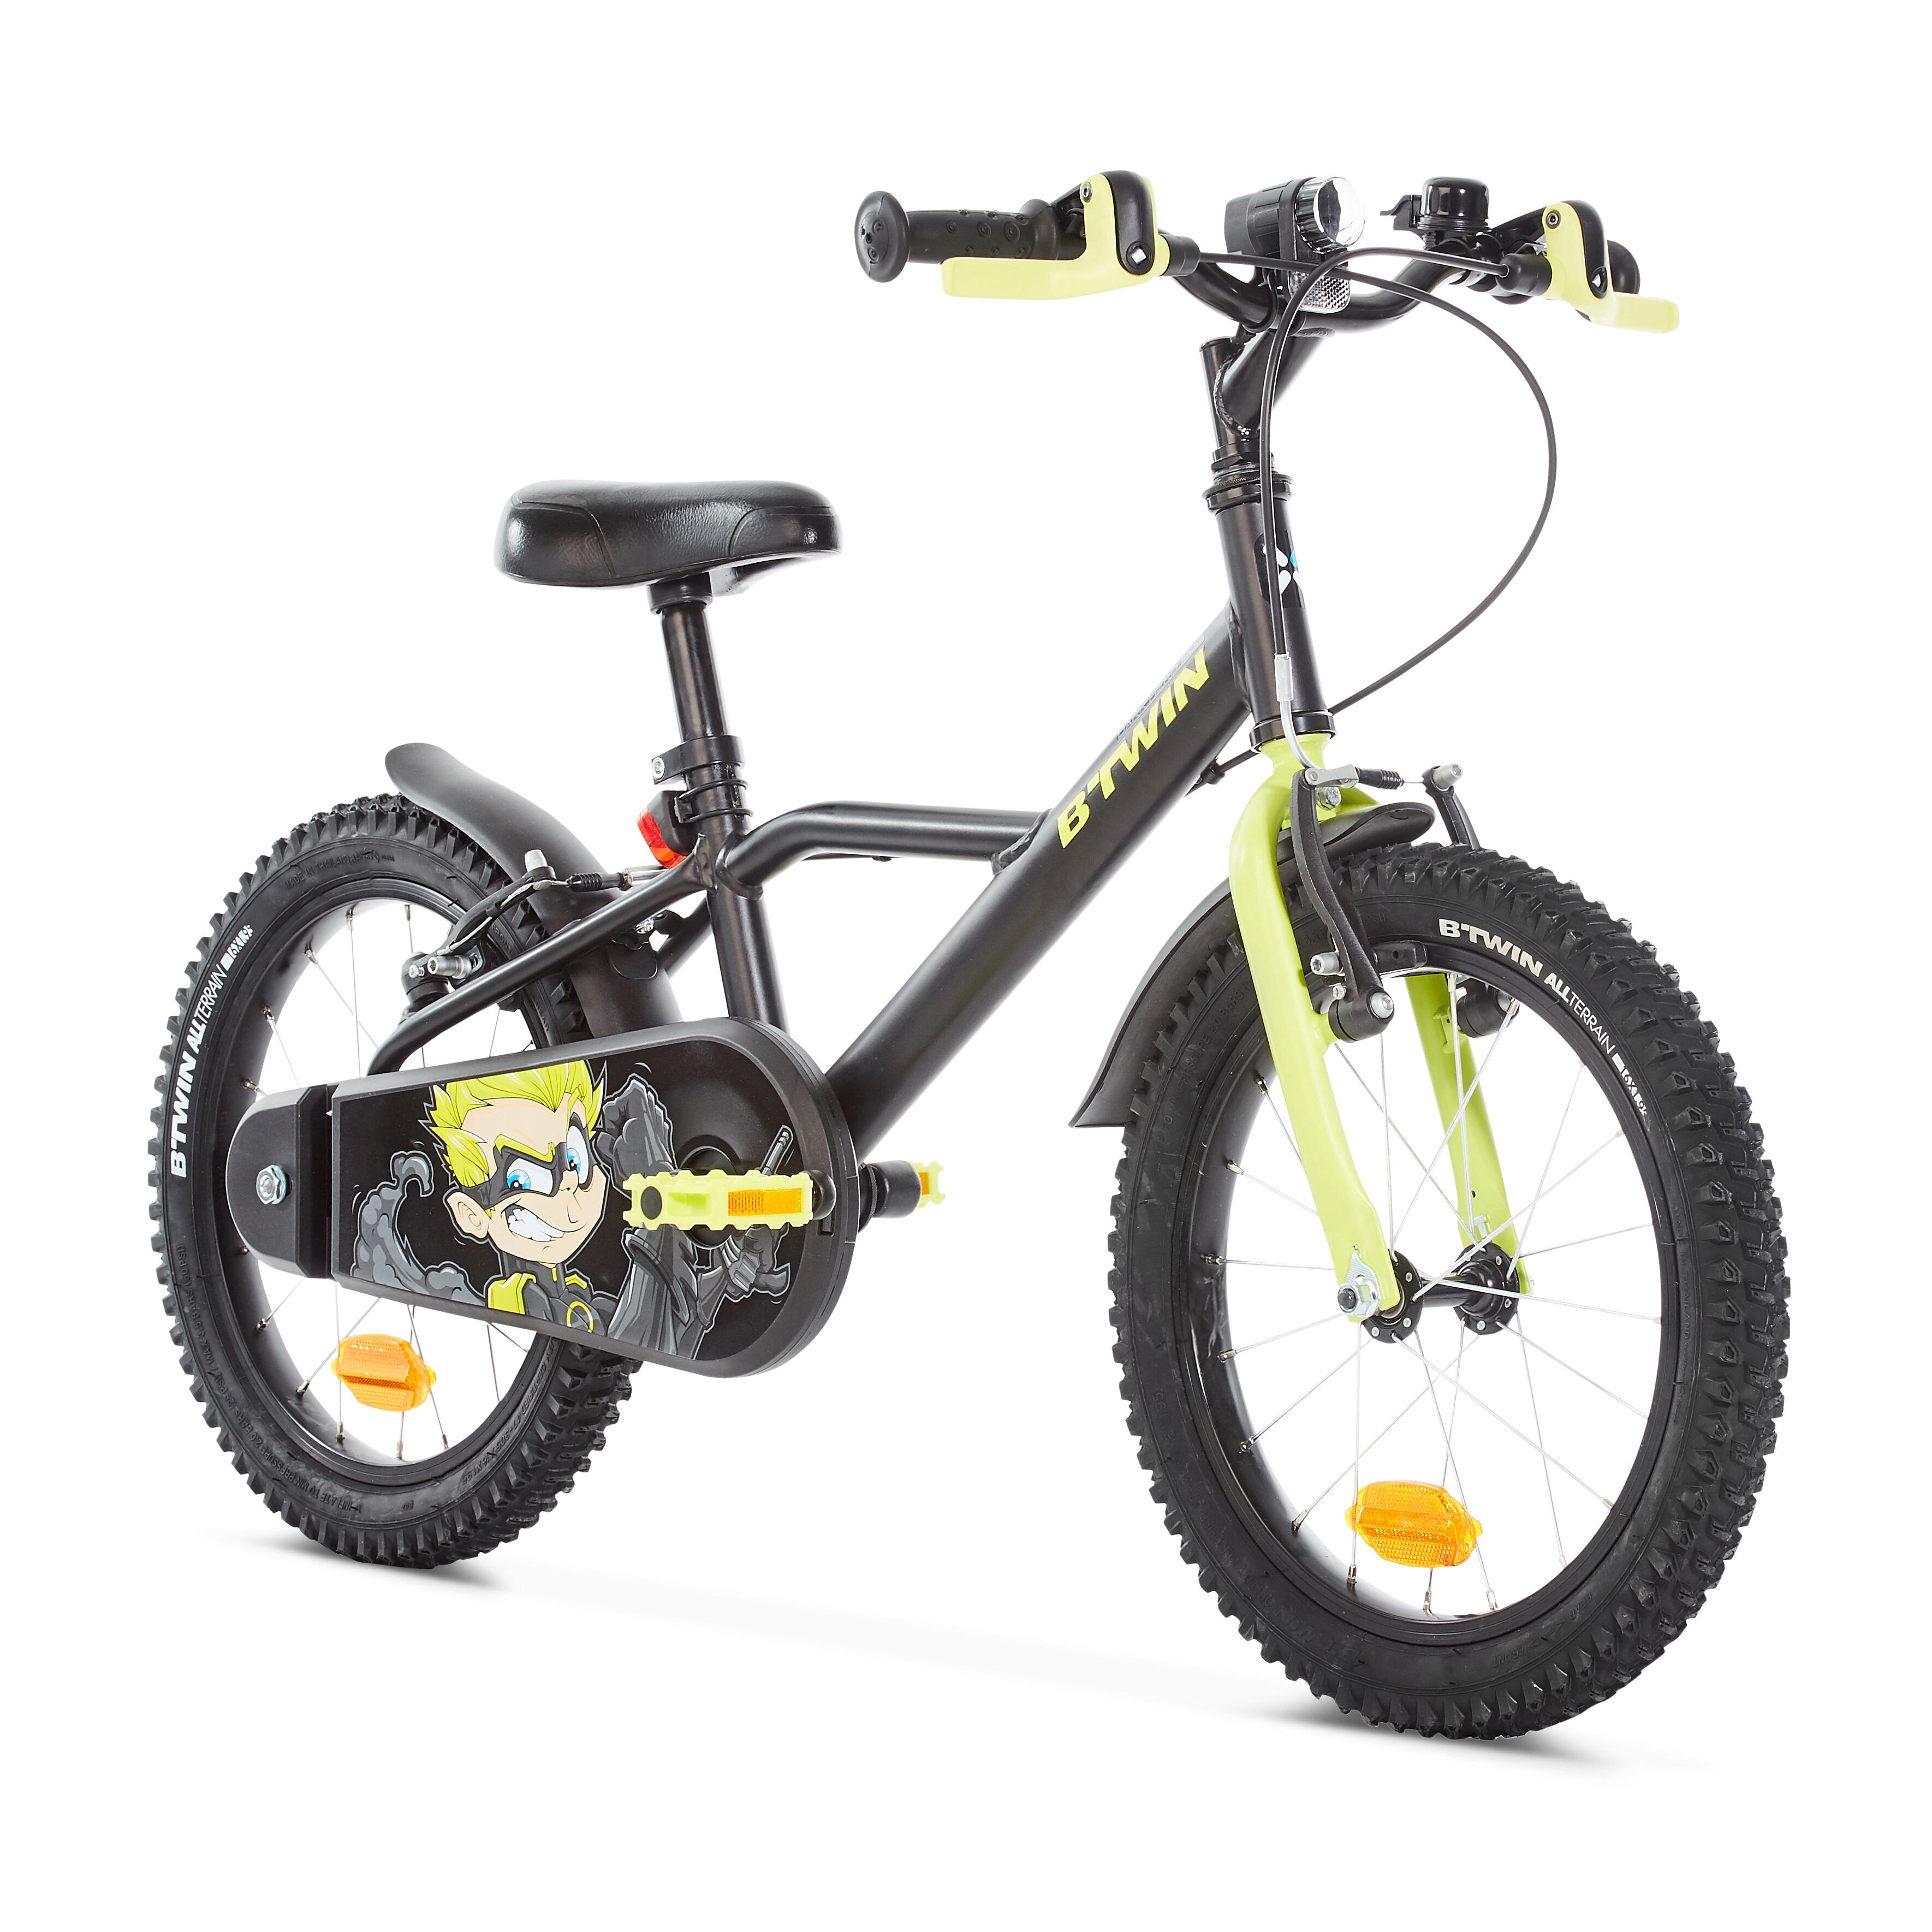 Велосипед купить детский 7 лет мальчику. Btwin 16 велосипед детский. Детский велосипед от 4 до 6 лет прогулочный 16" heroboy 500 Btwin. Велосипед детский Декатлон b Twin. Детский велосипед b'Twin heroboy 500 16.